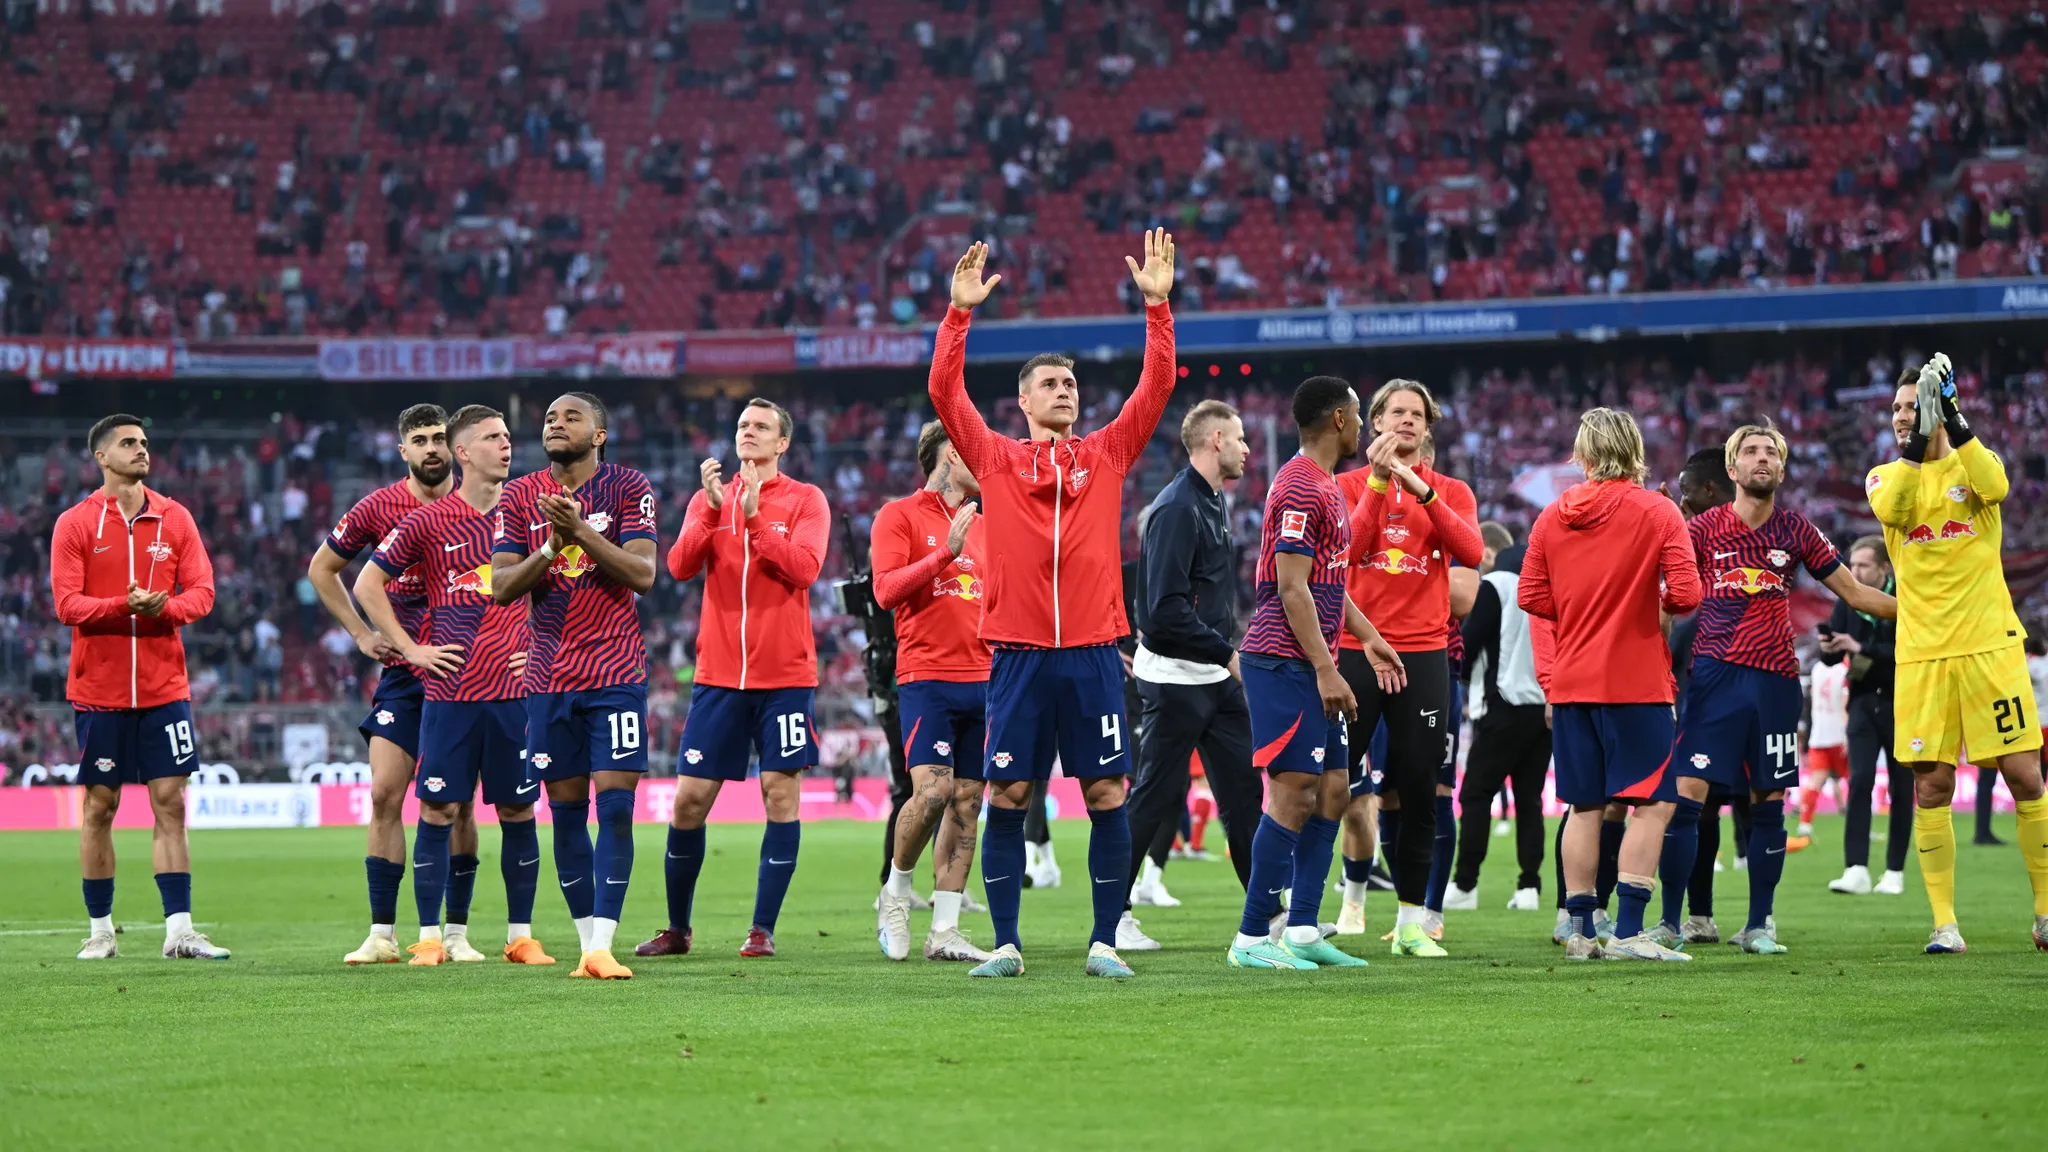 Die Leipziger Mannschaft bedankt sich nach dem 3:1-Sieg in München bei den mitgereisten Fans und feiert.